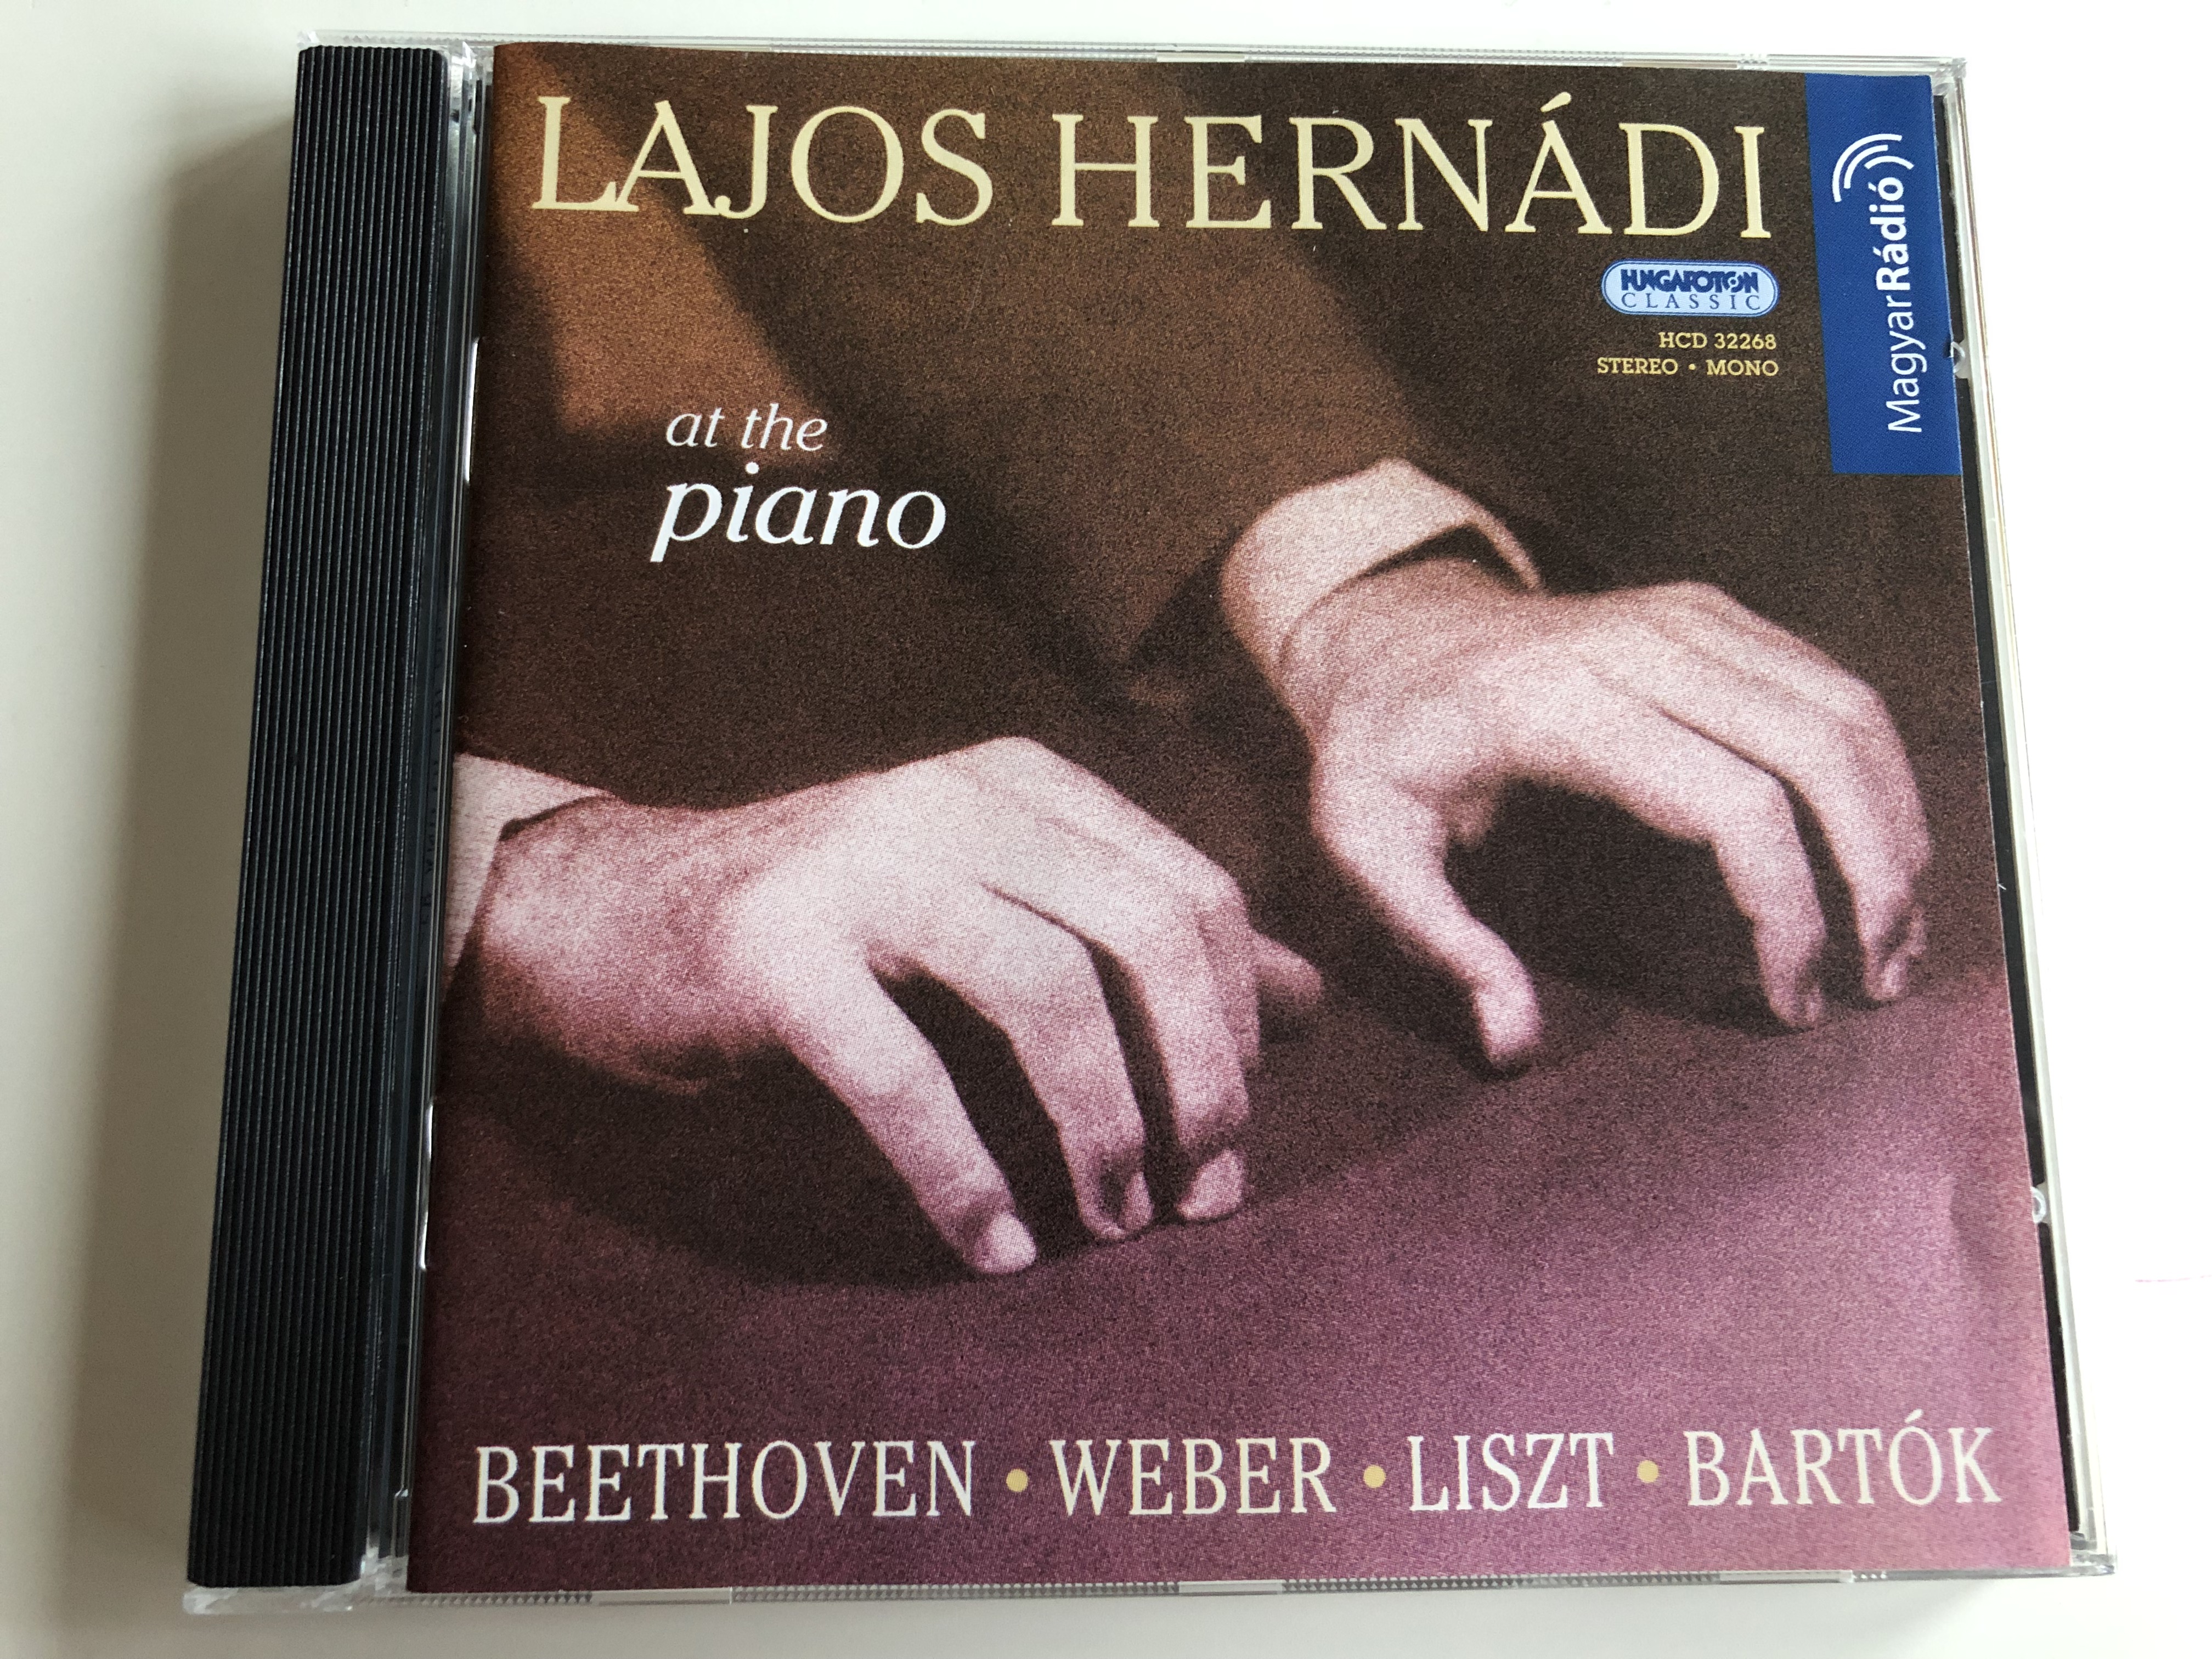 lajos-hern-di-at-the-piano-audio-cd-2004-hugaroton-classic-hungarian-radio-recordings-hcd32268-1-.jpg